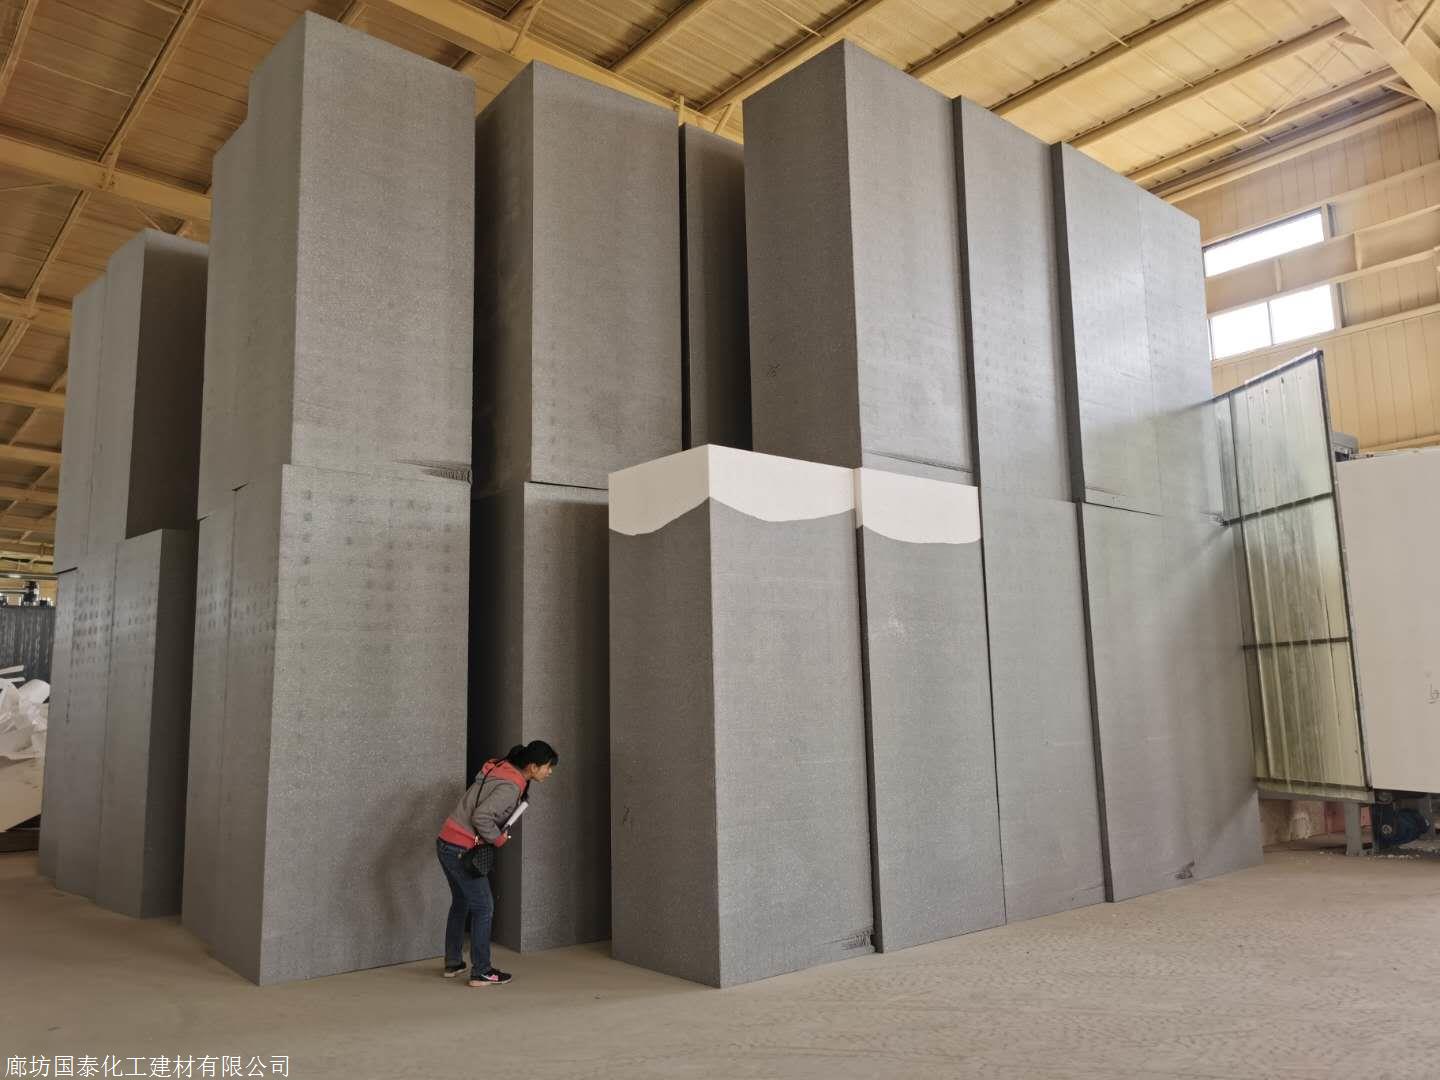 聚苯乙烯软硬情况软质成型工艺模塑用途外墙保温外形尺寸1200*600*100